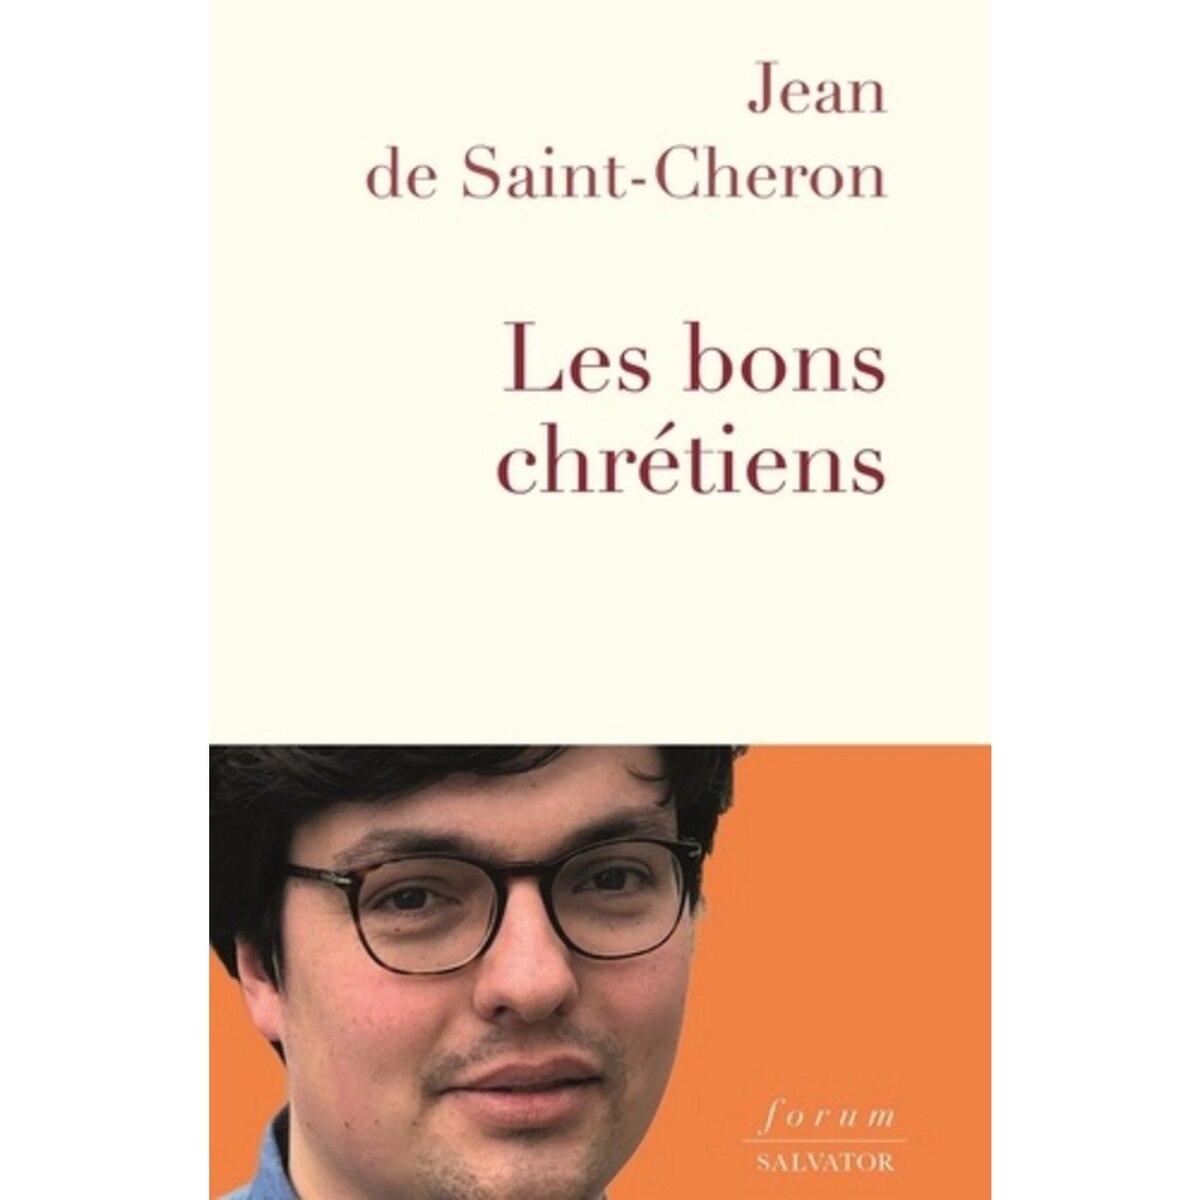  LES BONS CHRETIENS, Saint-Cheron Jean de